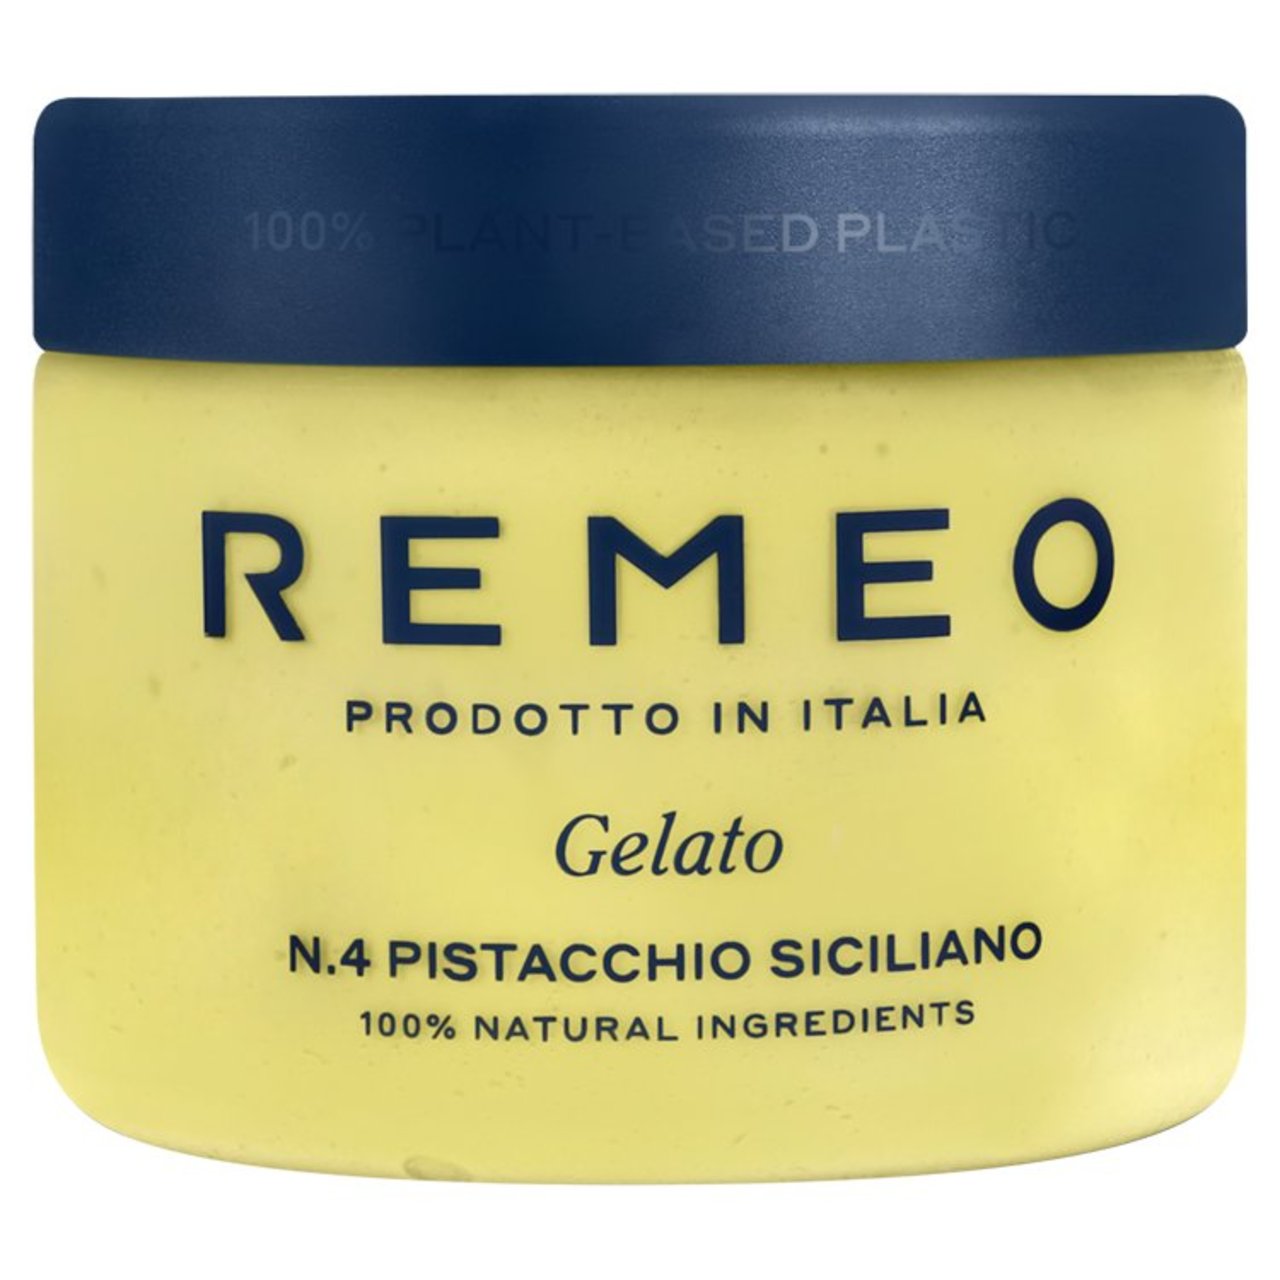 Remeo Gelato Pistachio Siciliano 462ml